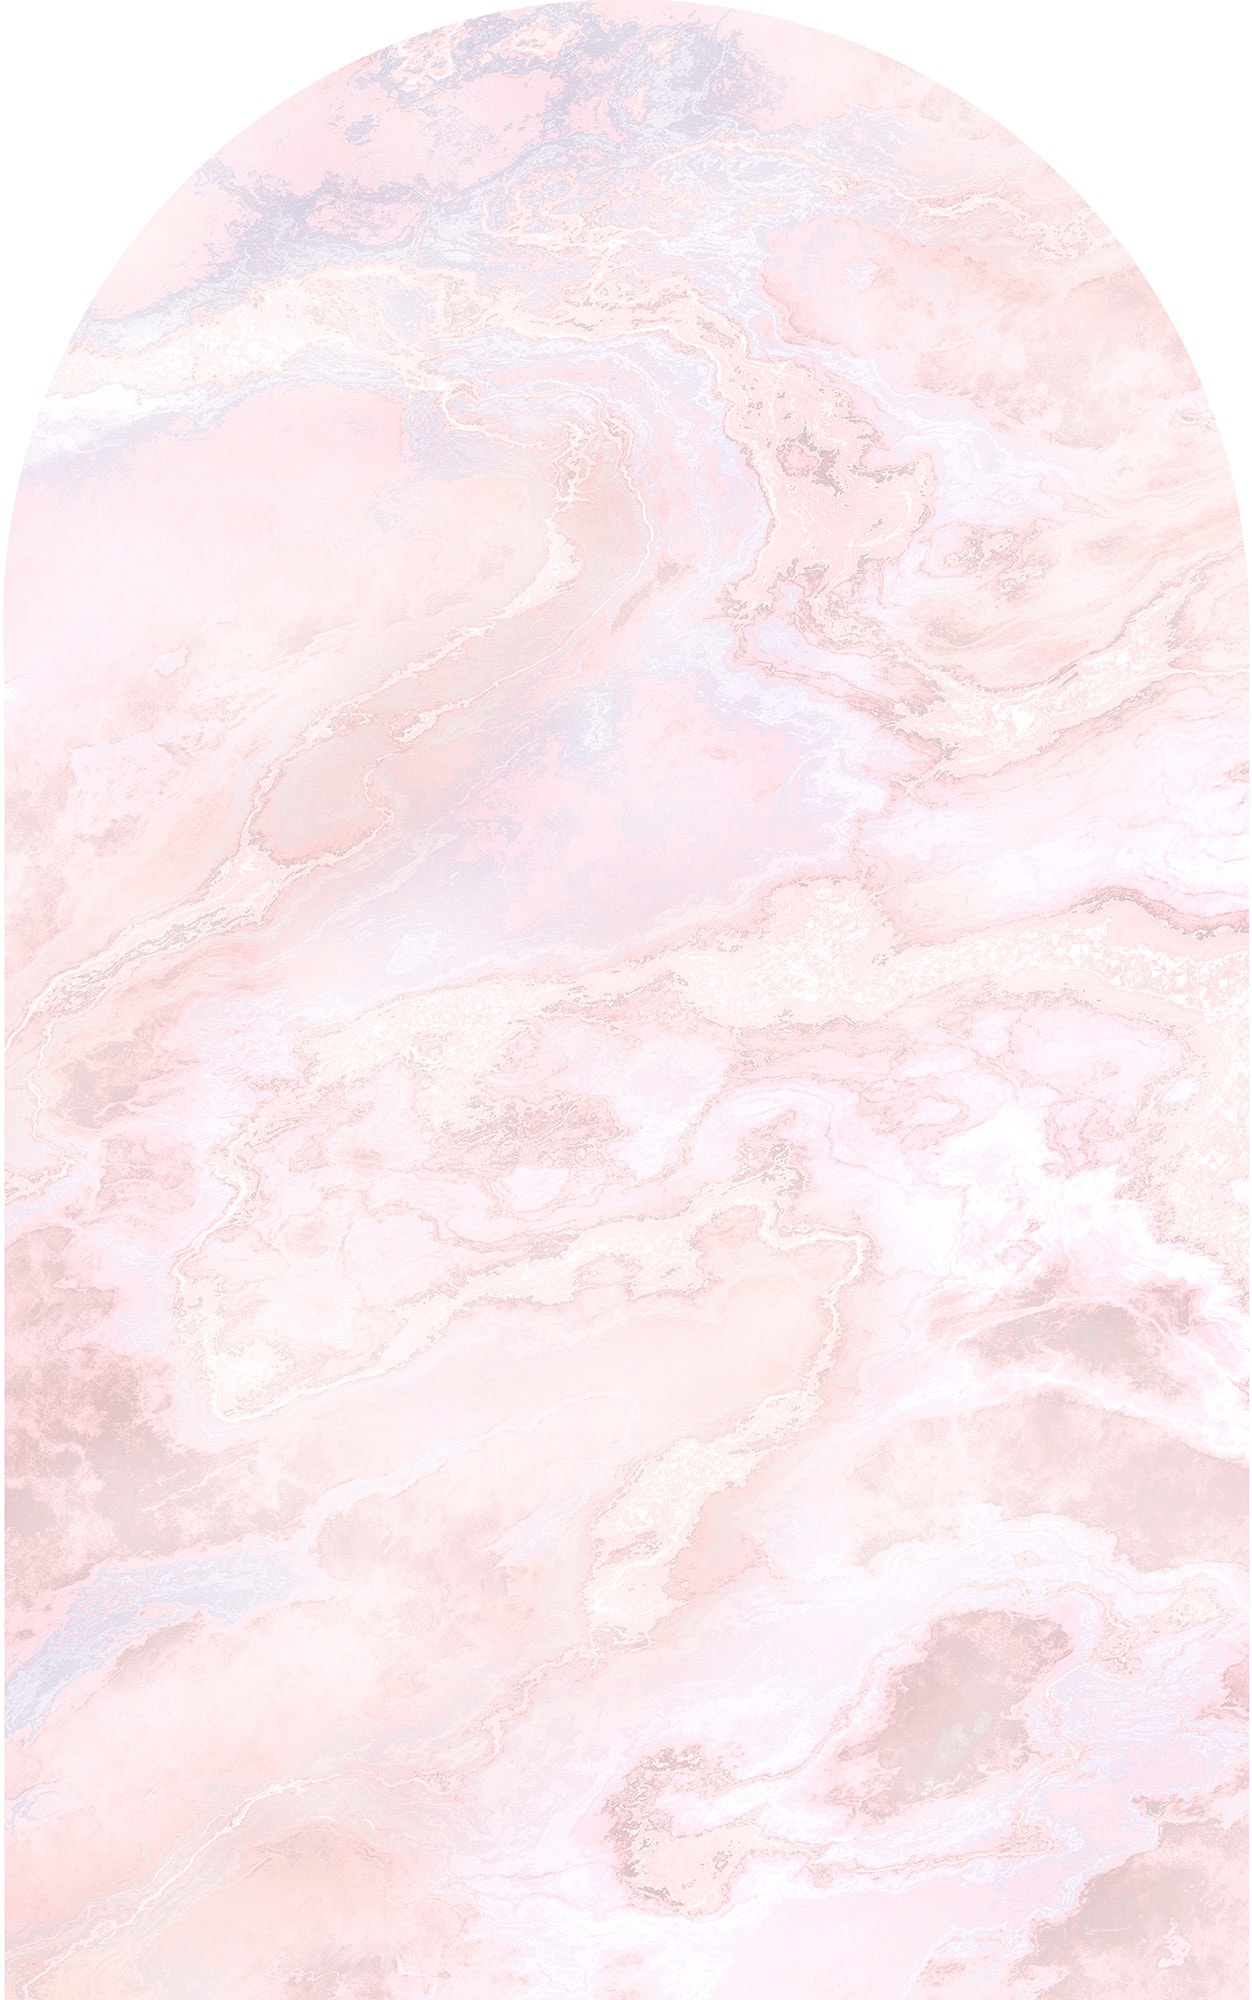 Komar Fototapete "Mármol Rosa", 127x200 cm (Breite x Höhe)